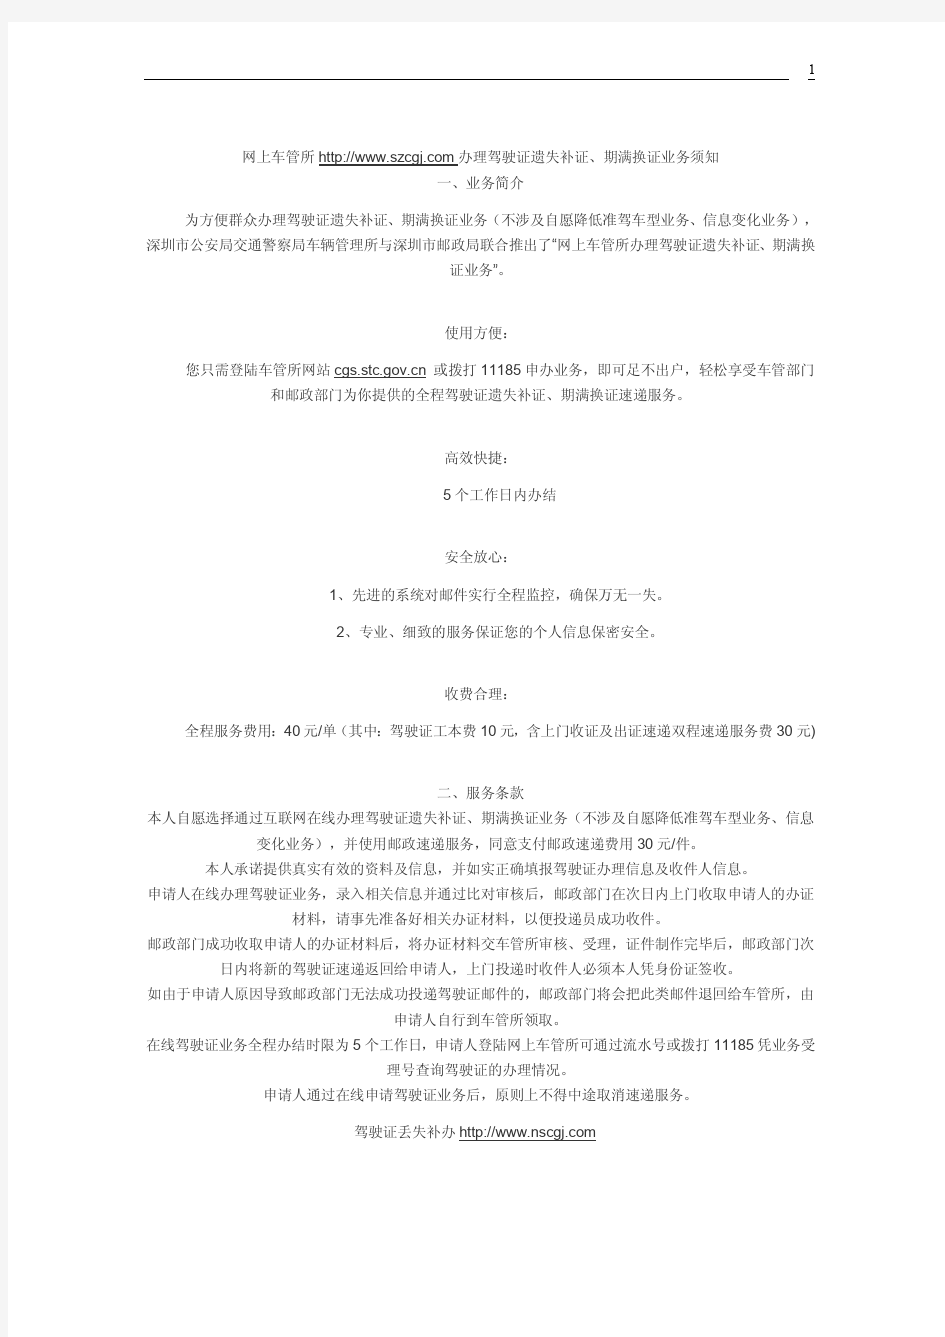 深圳驾驶证年审流程、换证流程